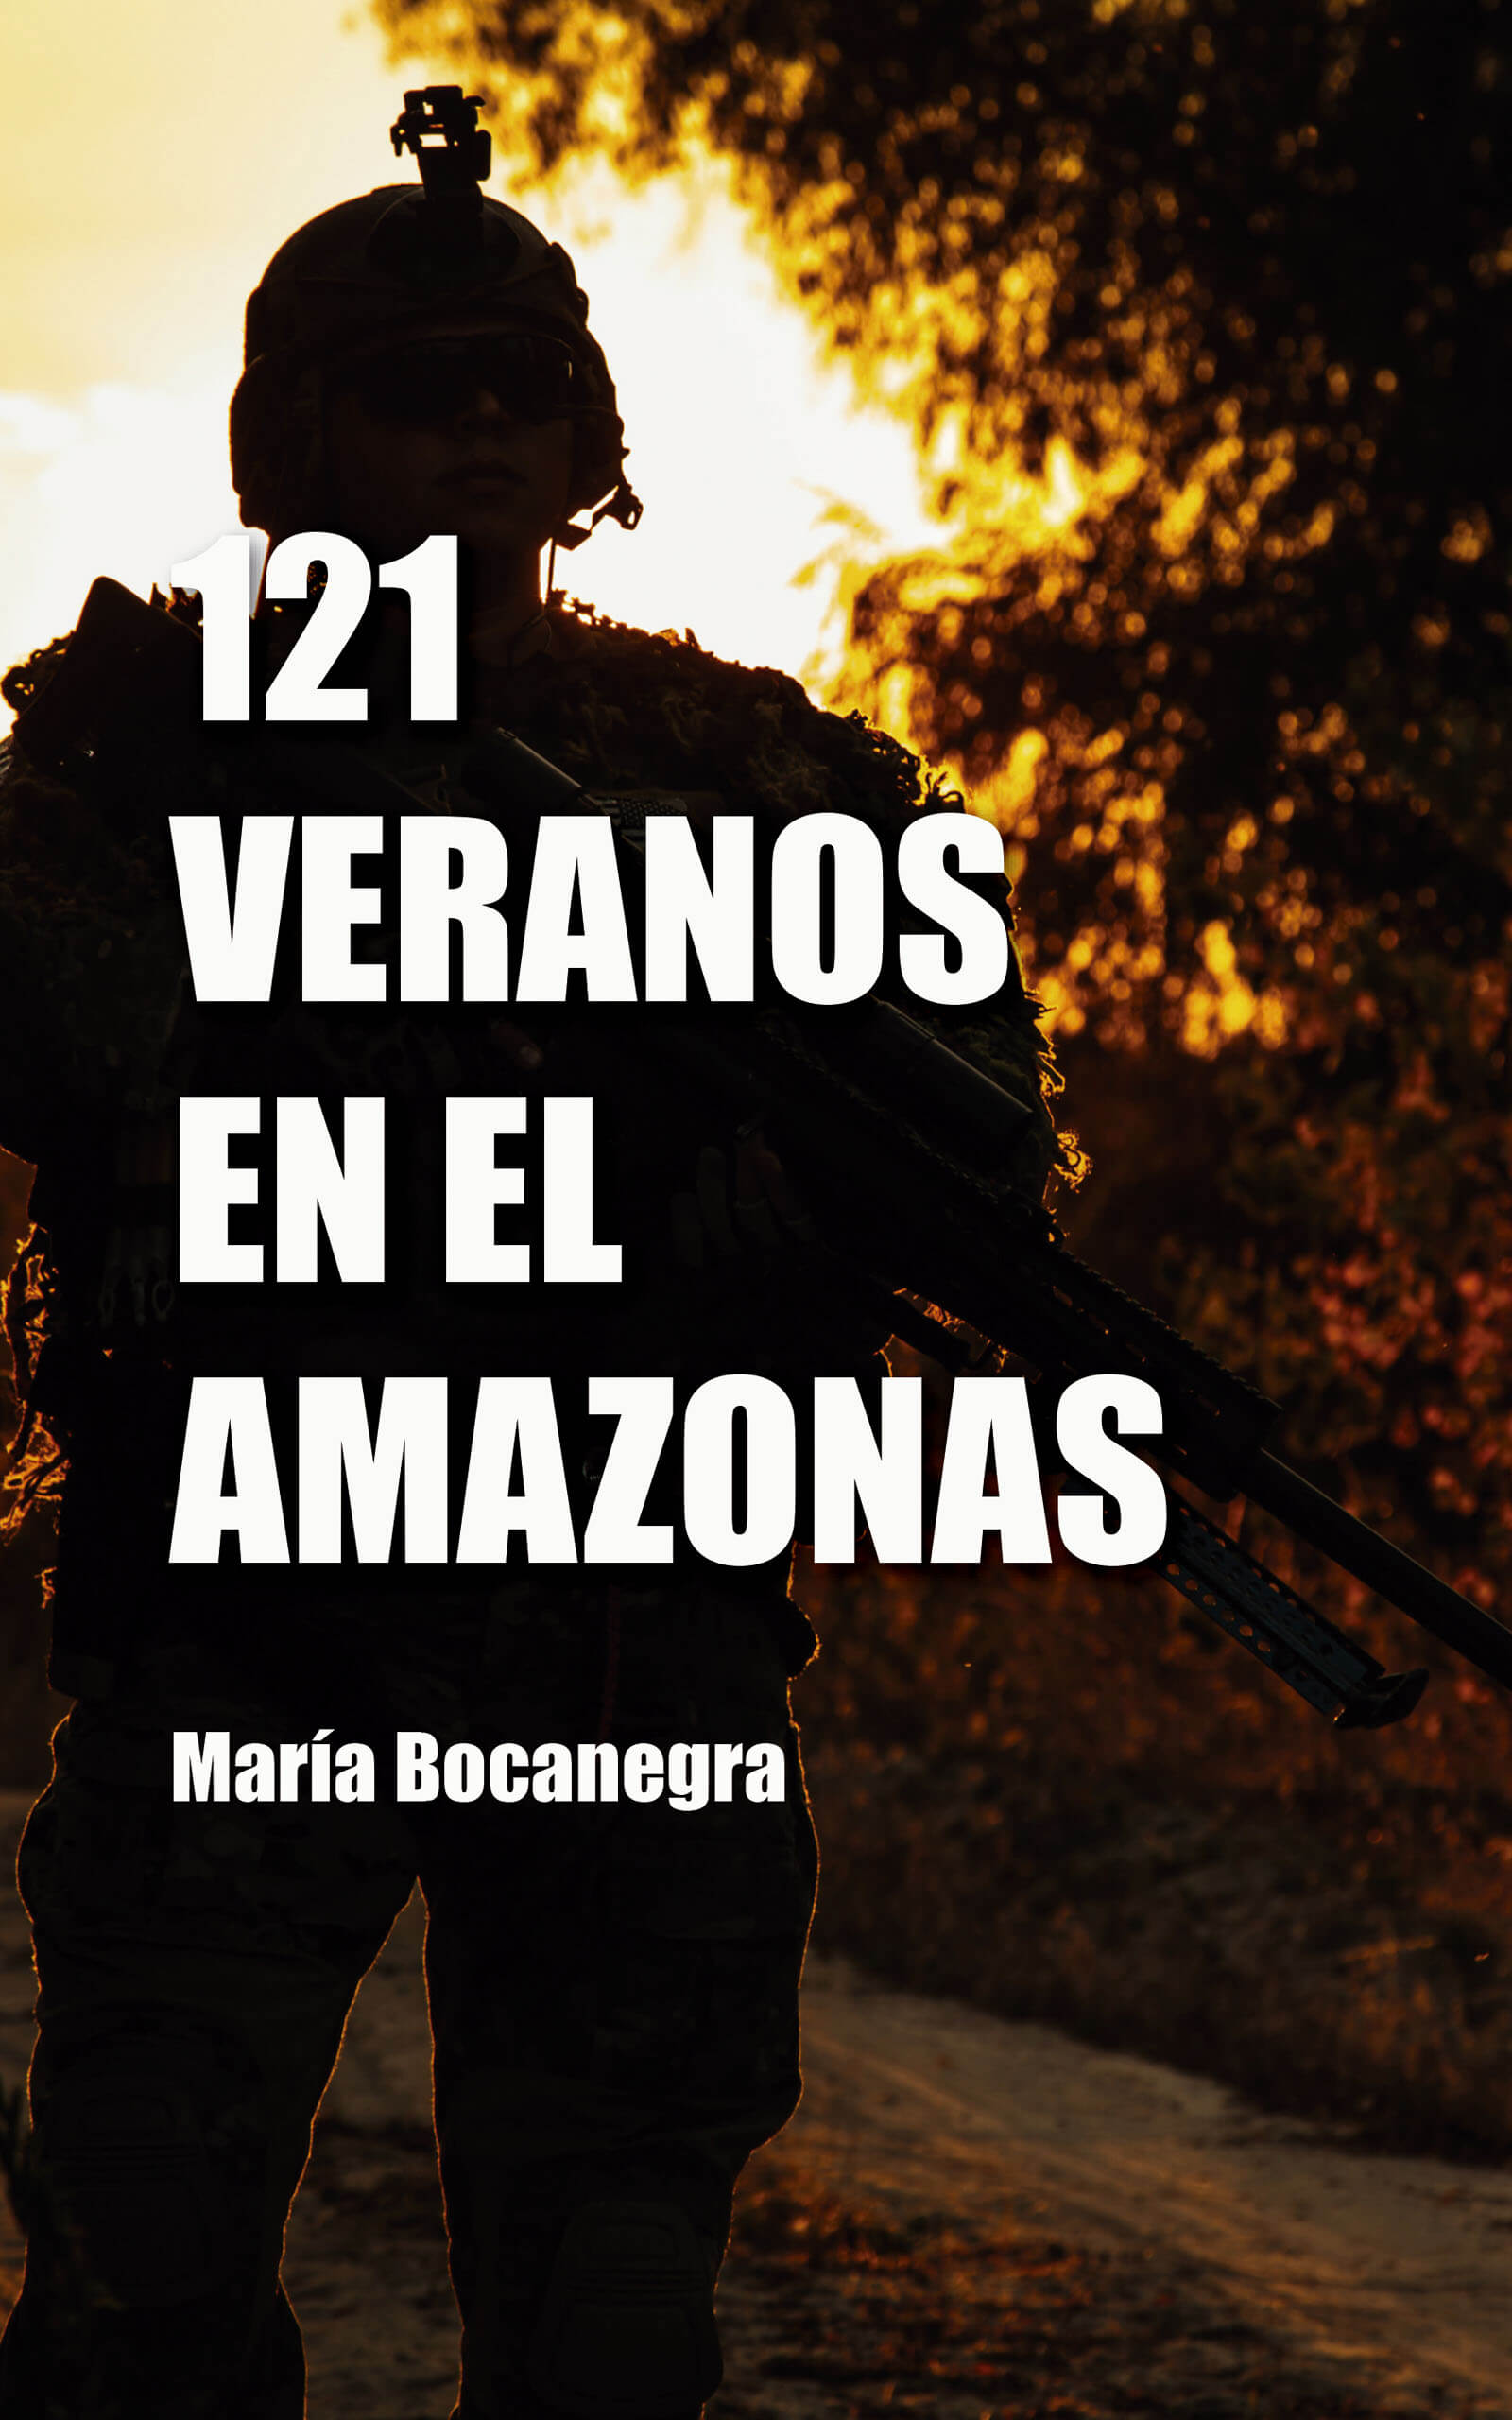 121 veranos en el Amazonas, de María Bocanegra